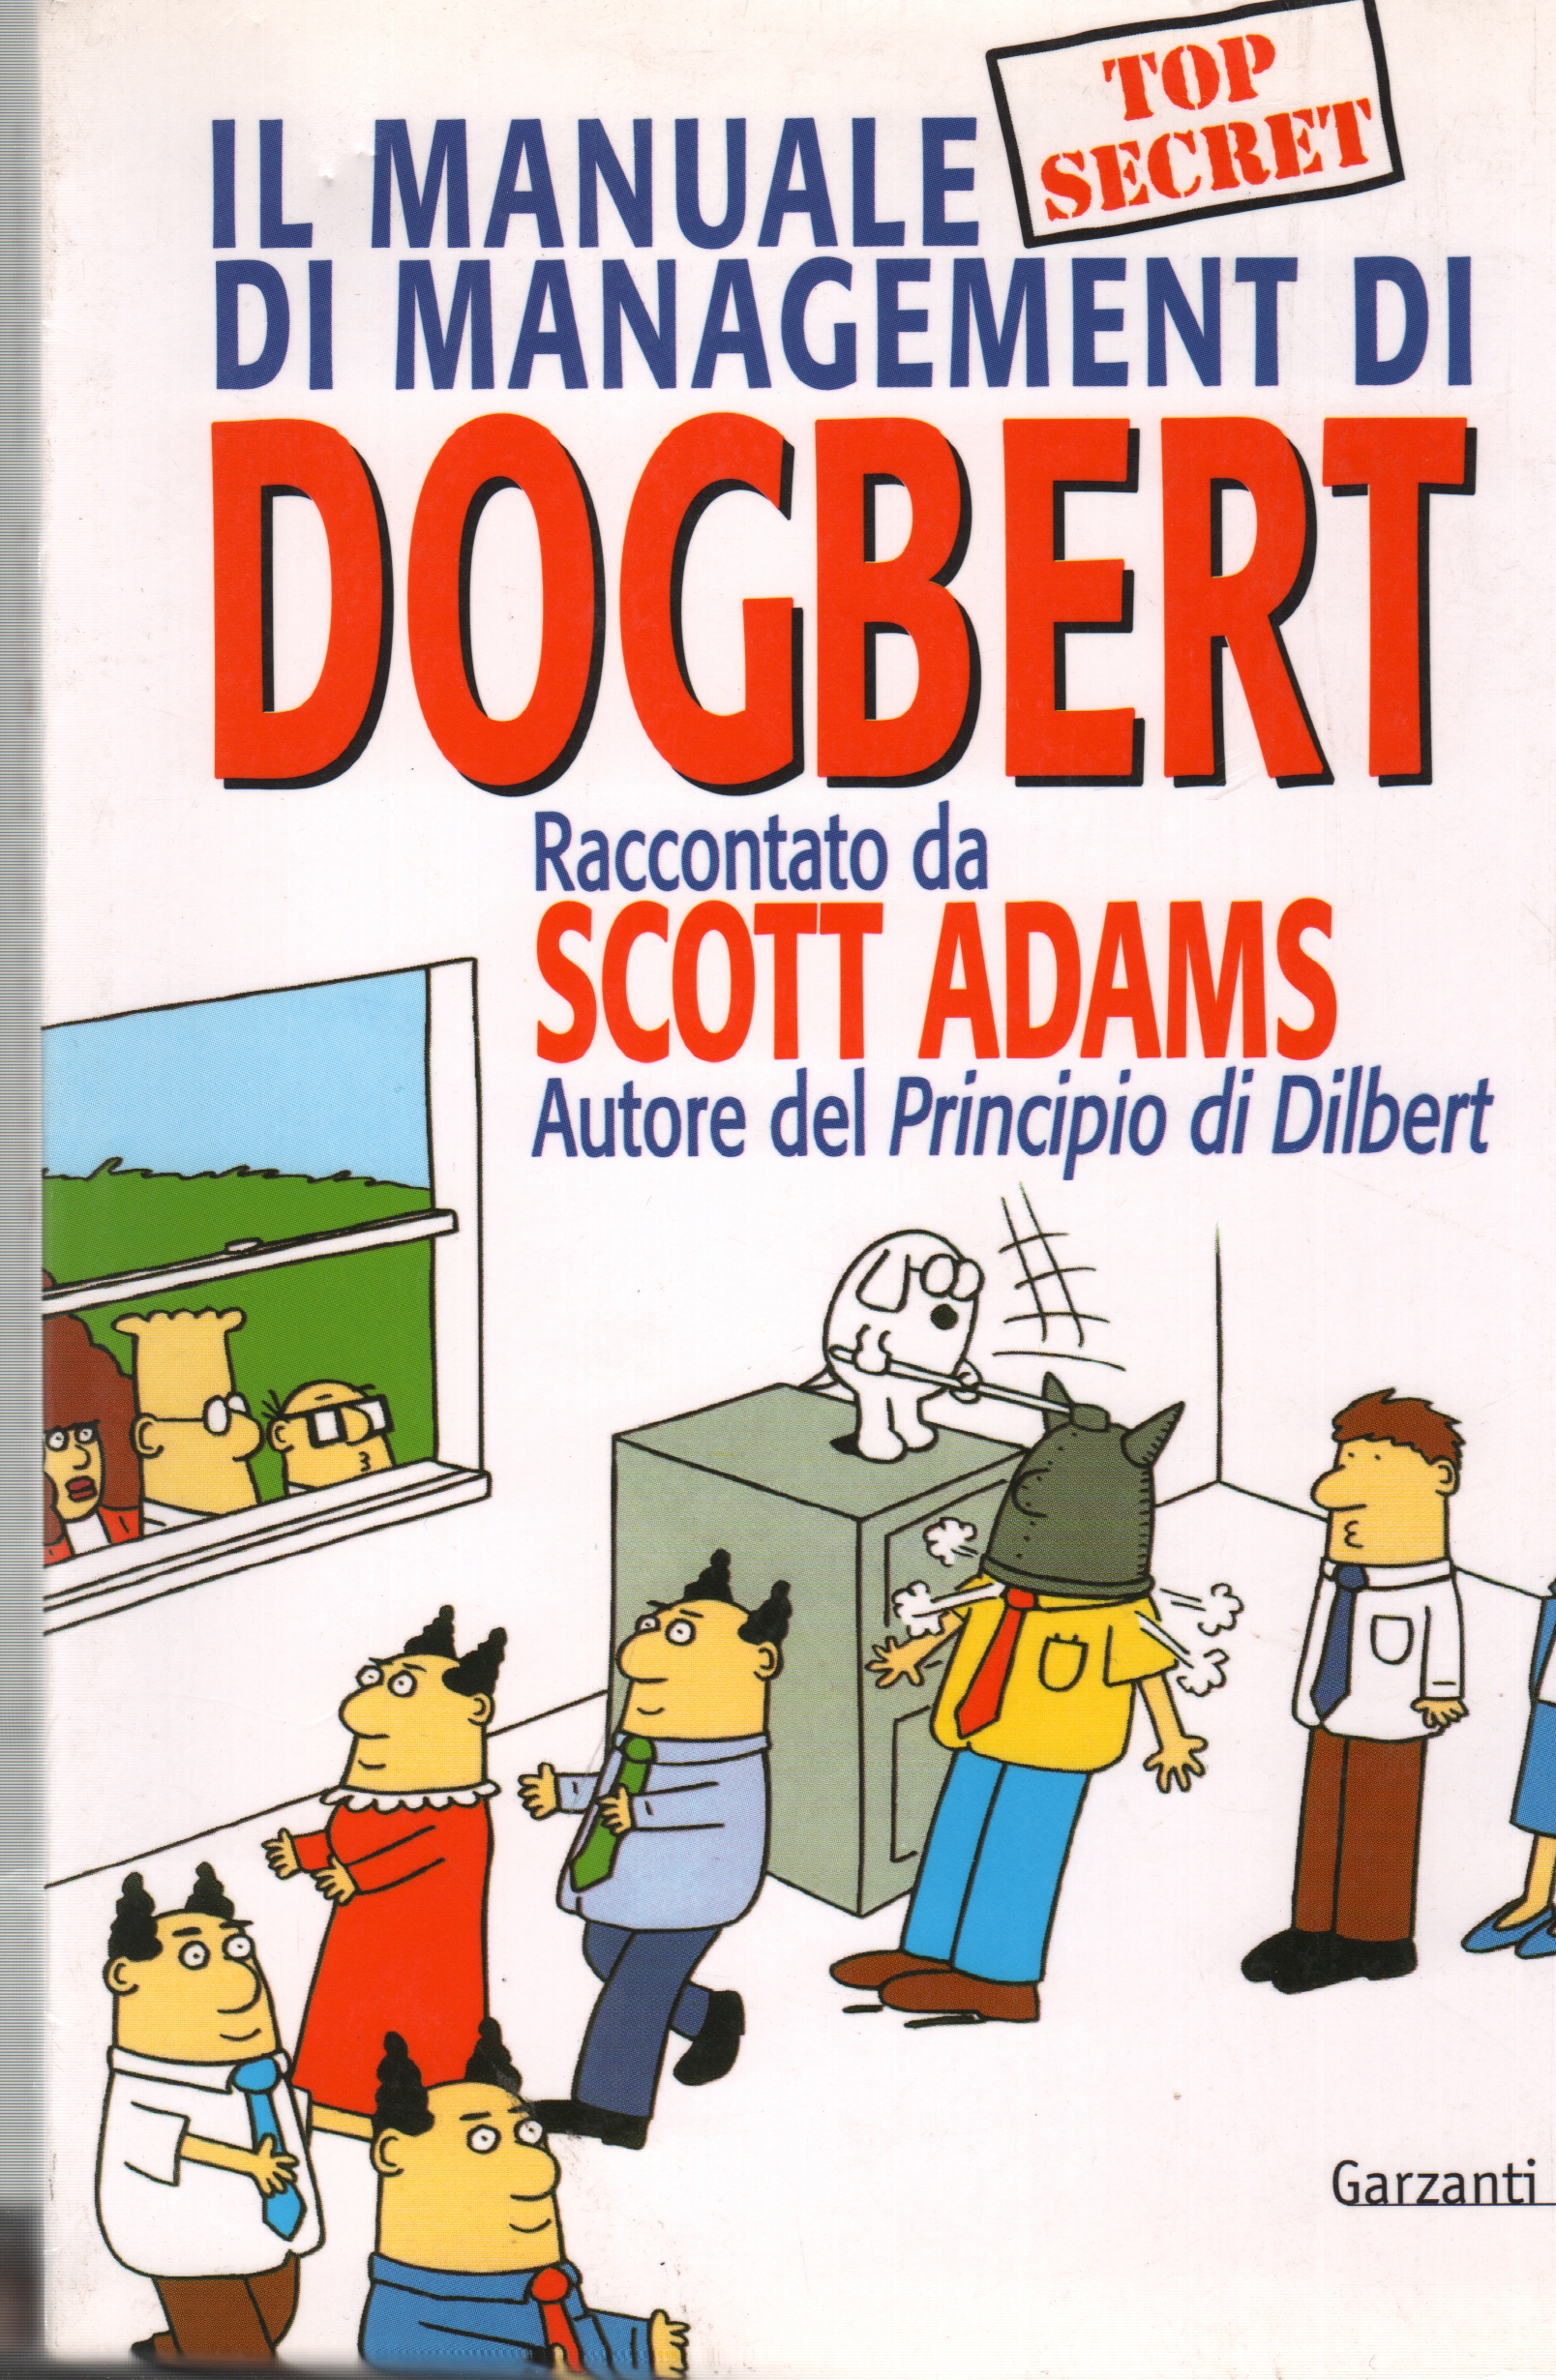 Dogberts Managementhandbuch